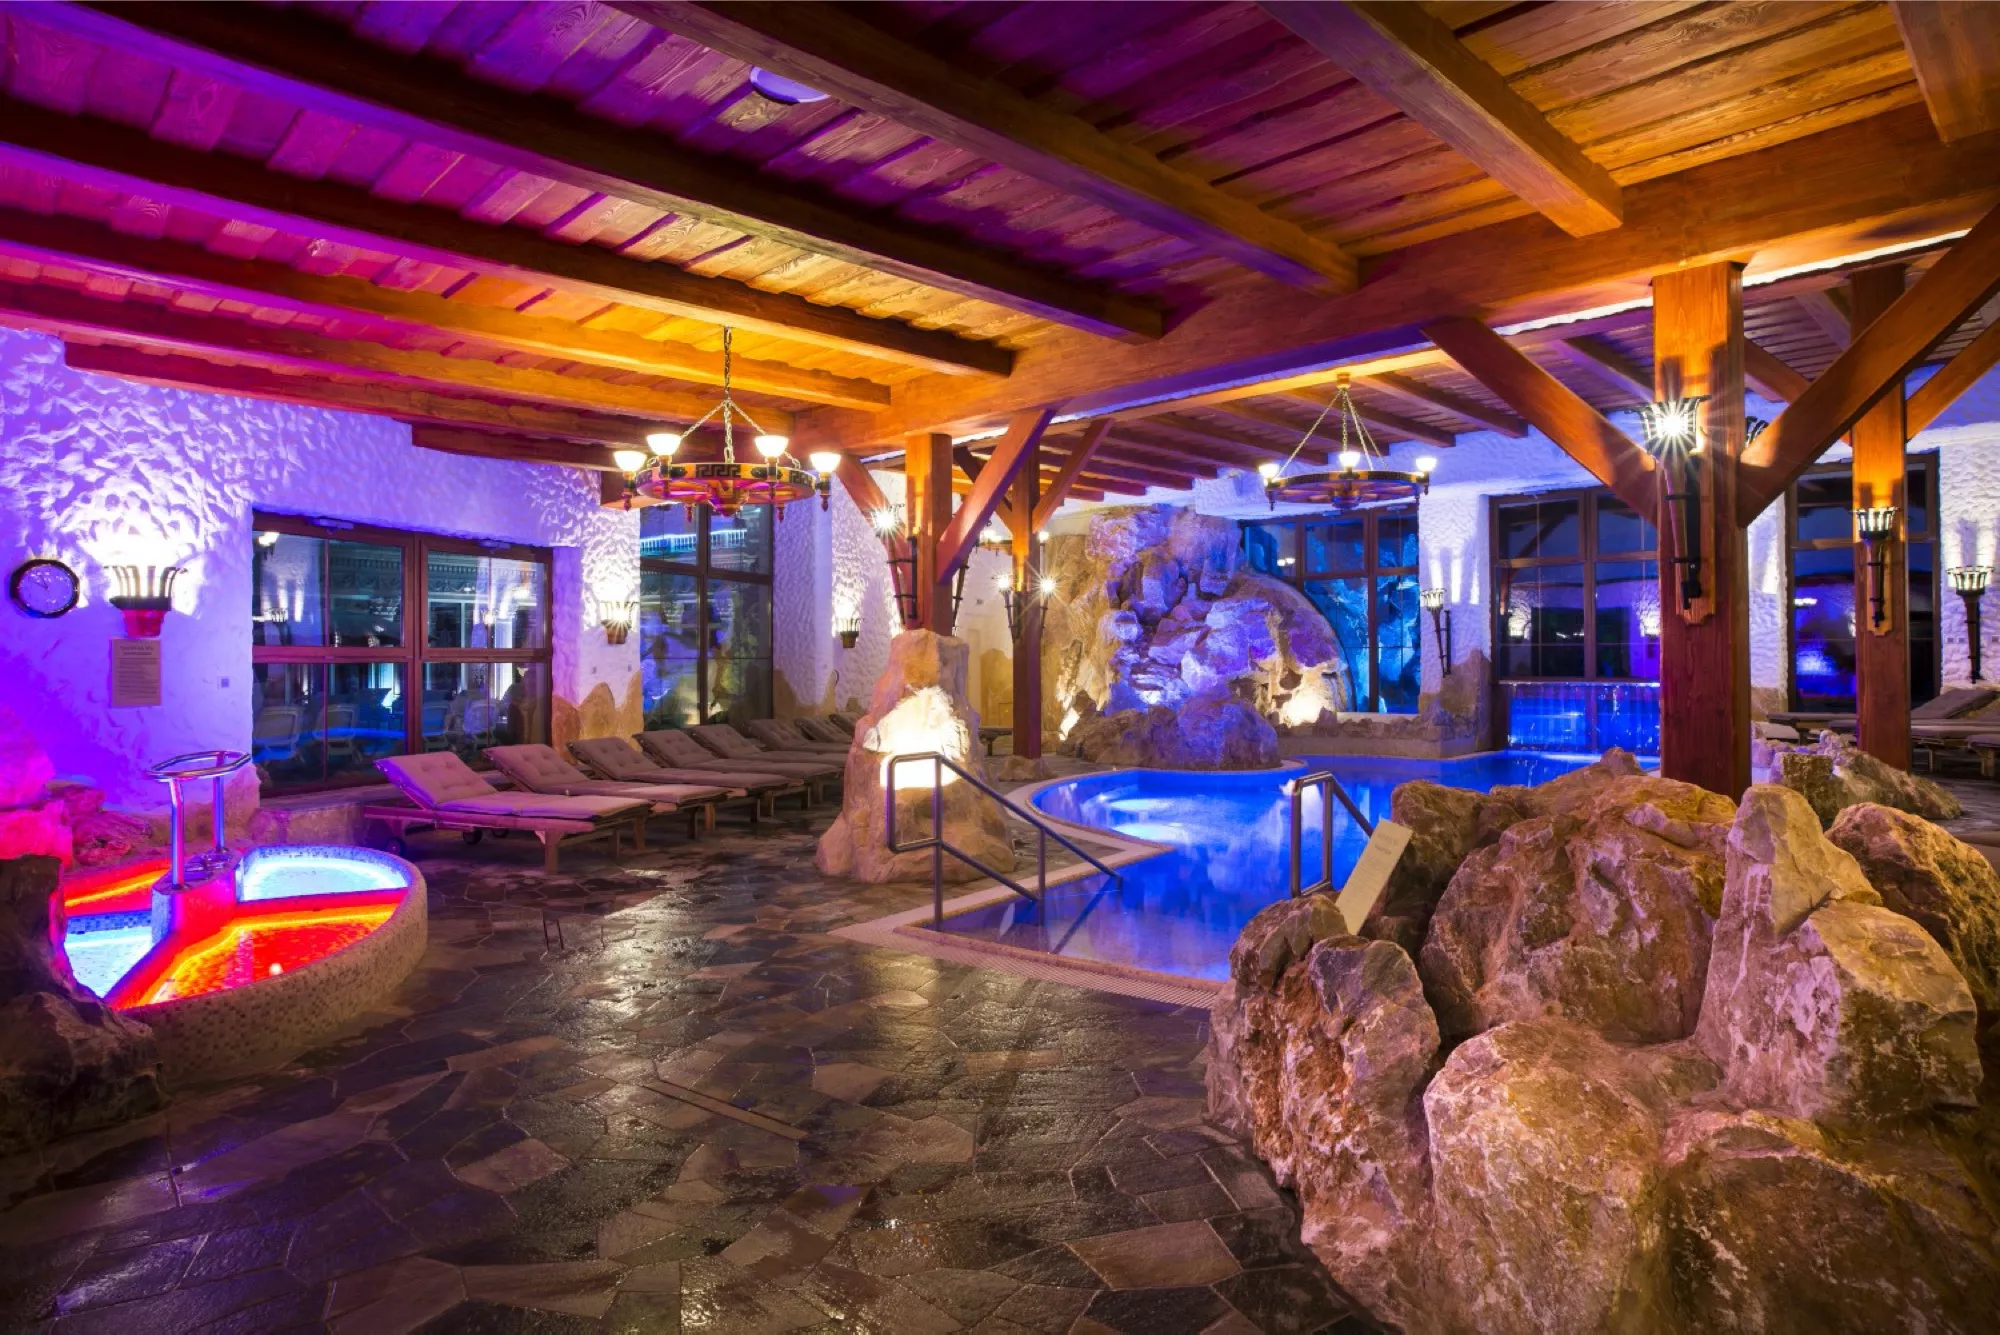 Interier saunoveho sveta. Vidno Kneippov kupel, vnutorny bazen s vychodom, lehatka, prijemne cerveno modre osvetlenie.